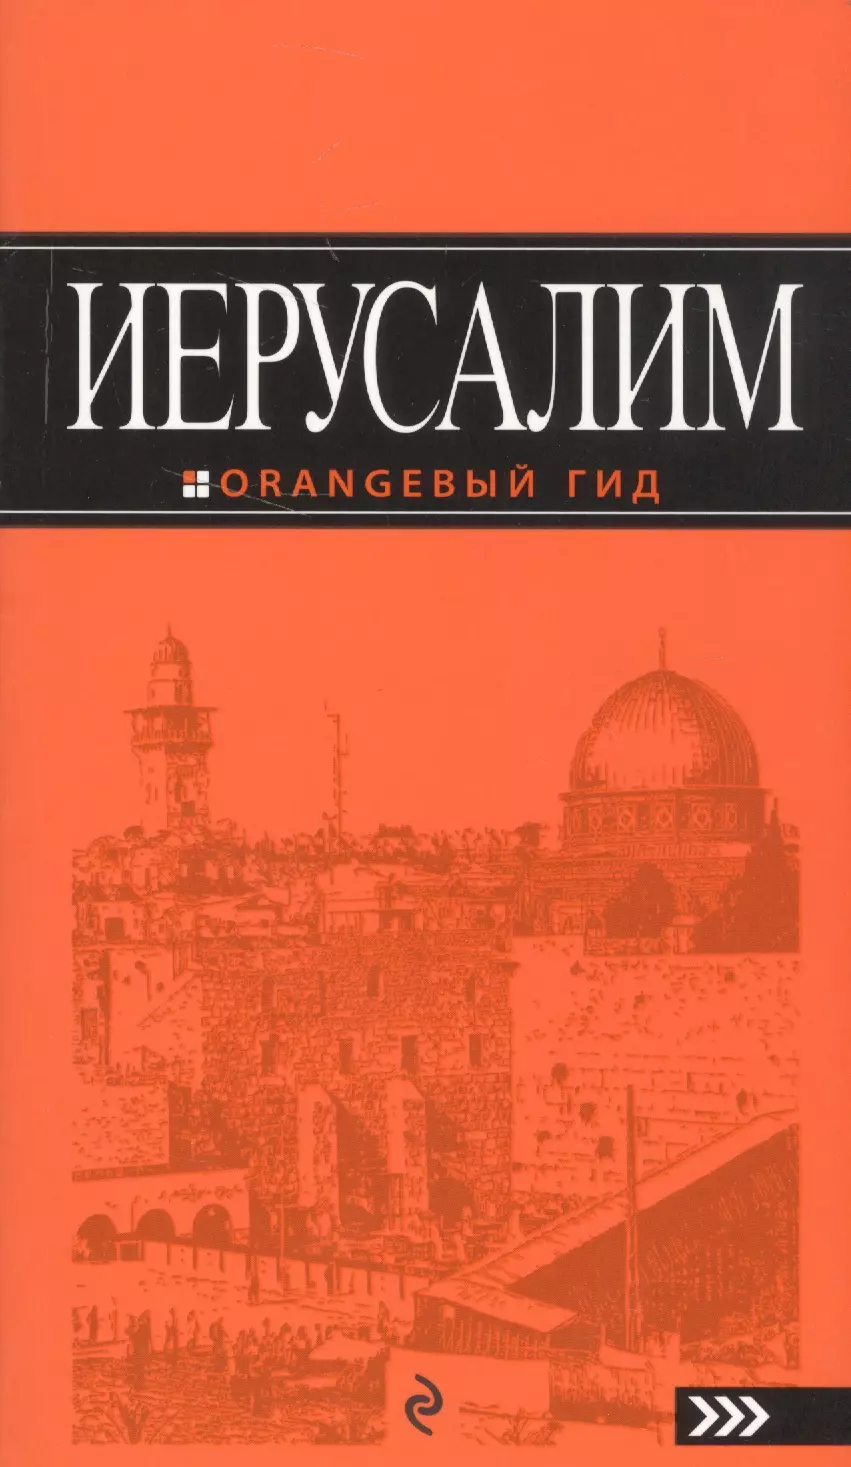 Арье Лев - Иерусалим: путеводитель. 2-е изд., испр. и доп.